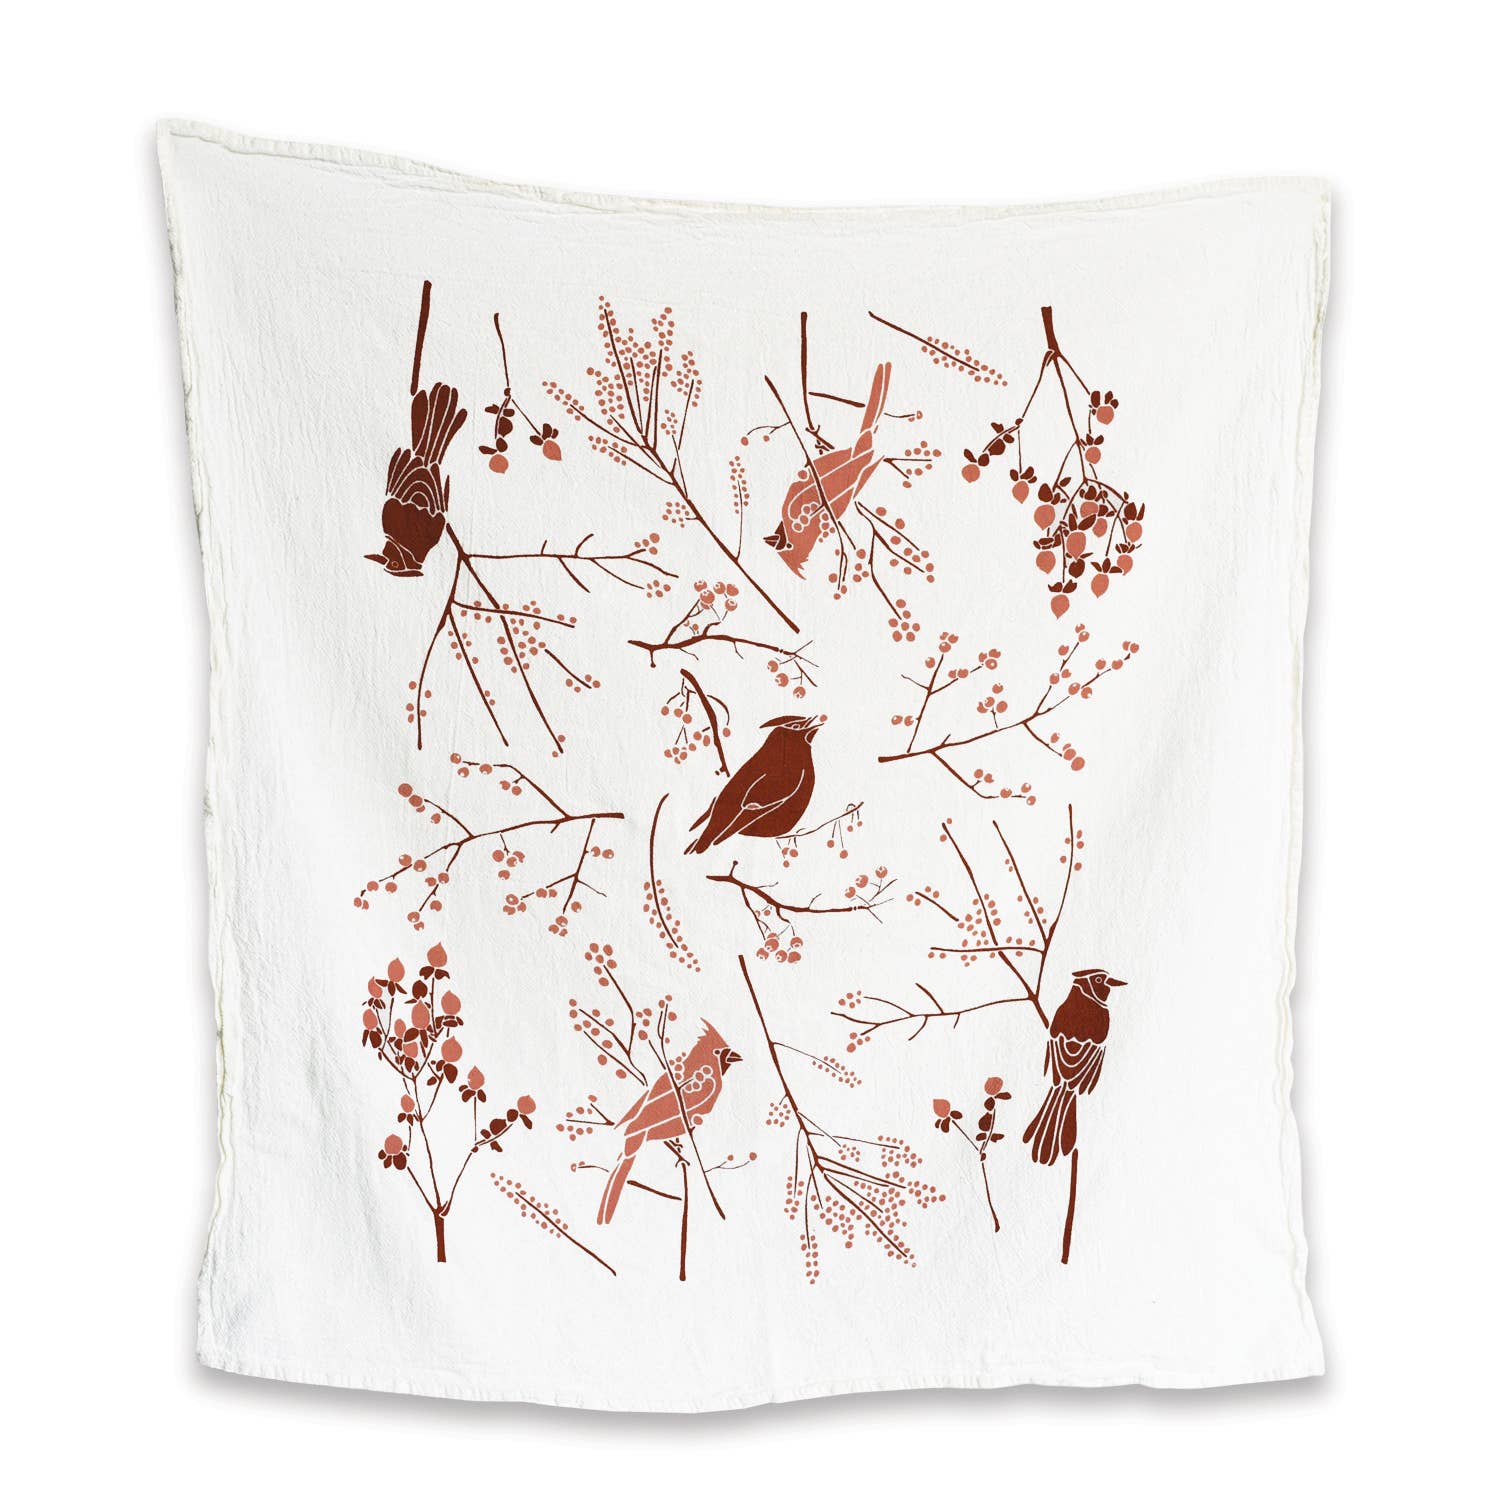 Birds + Berries Towel: 25” x 26”